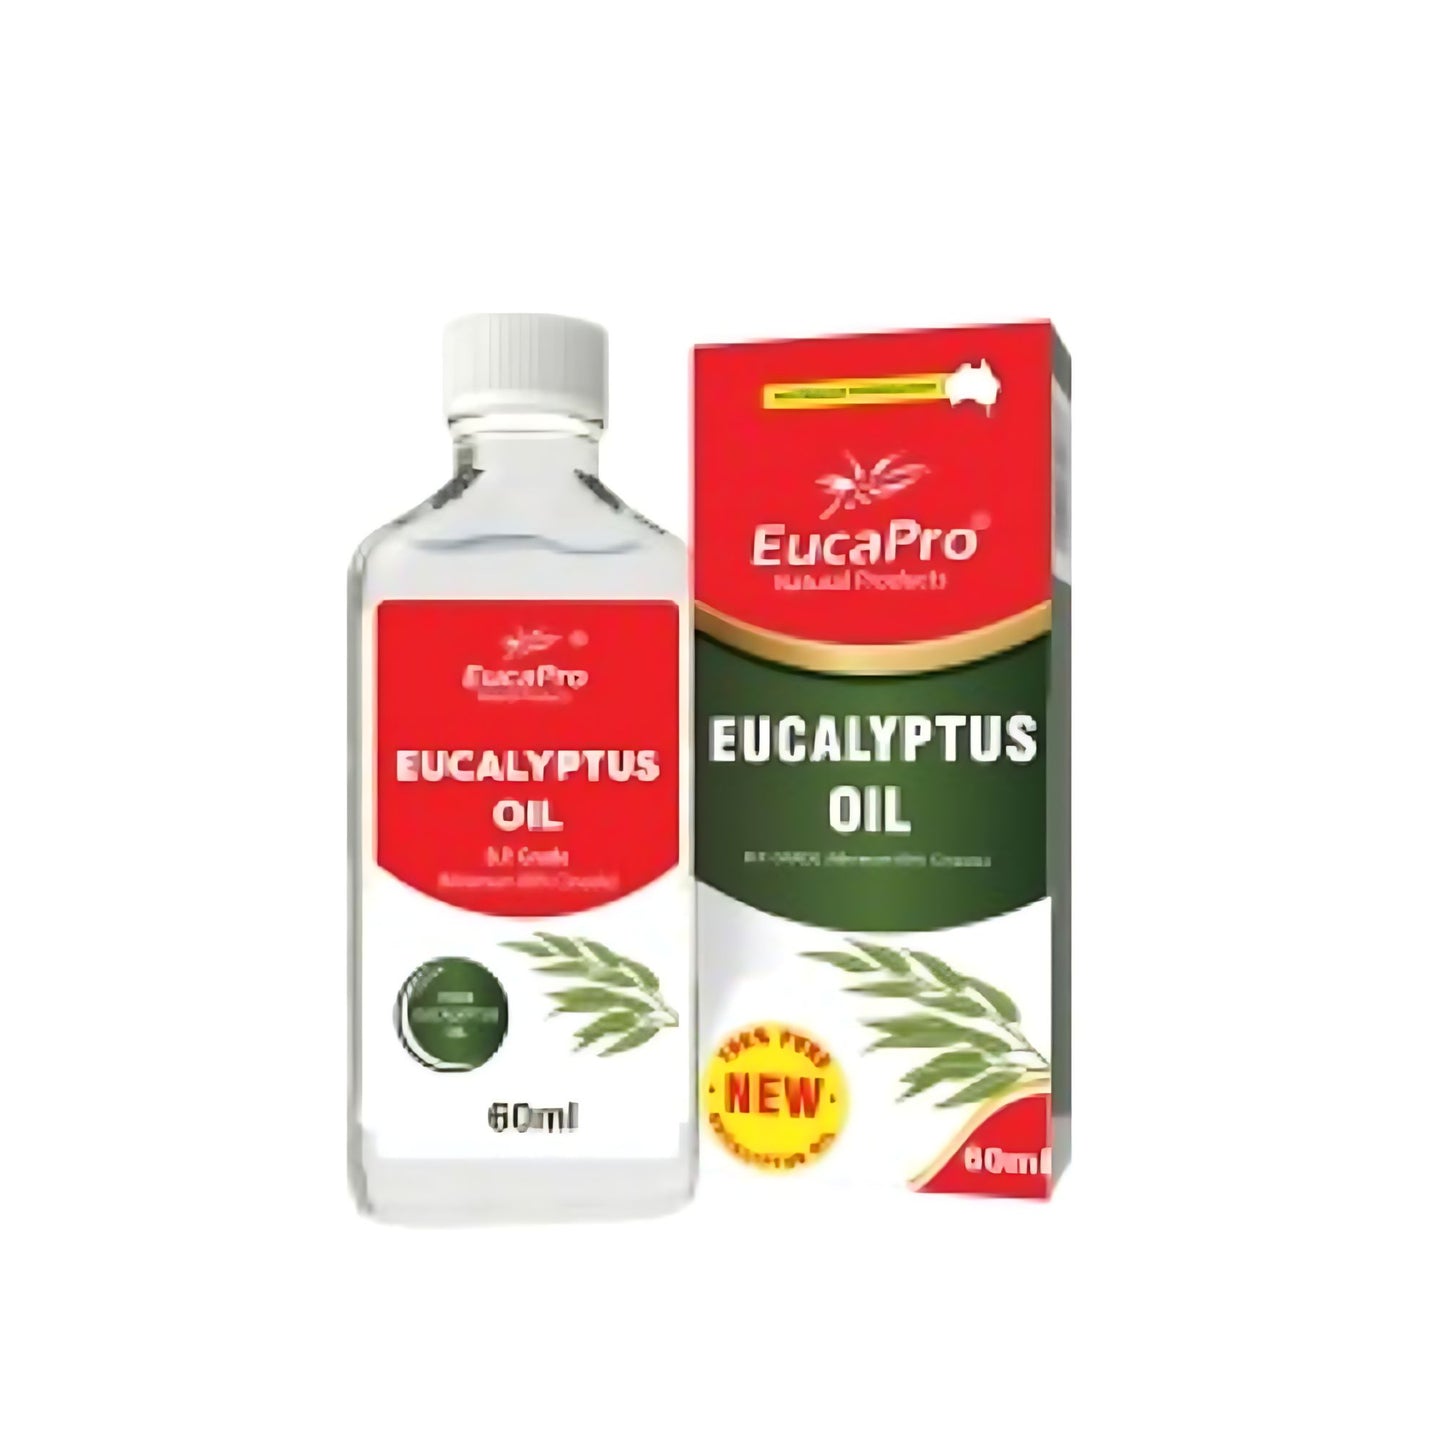 Eucapro Eucalyptus Oil 60ml